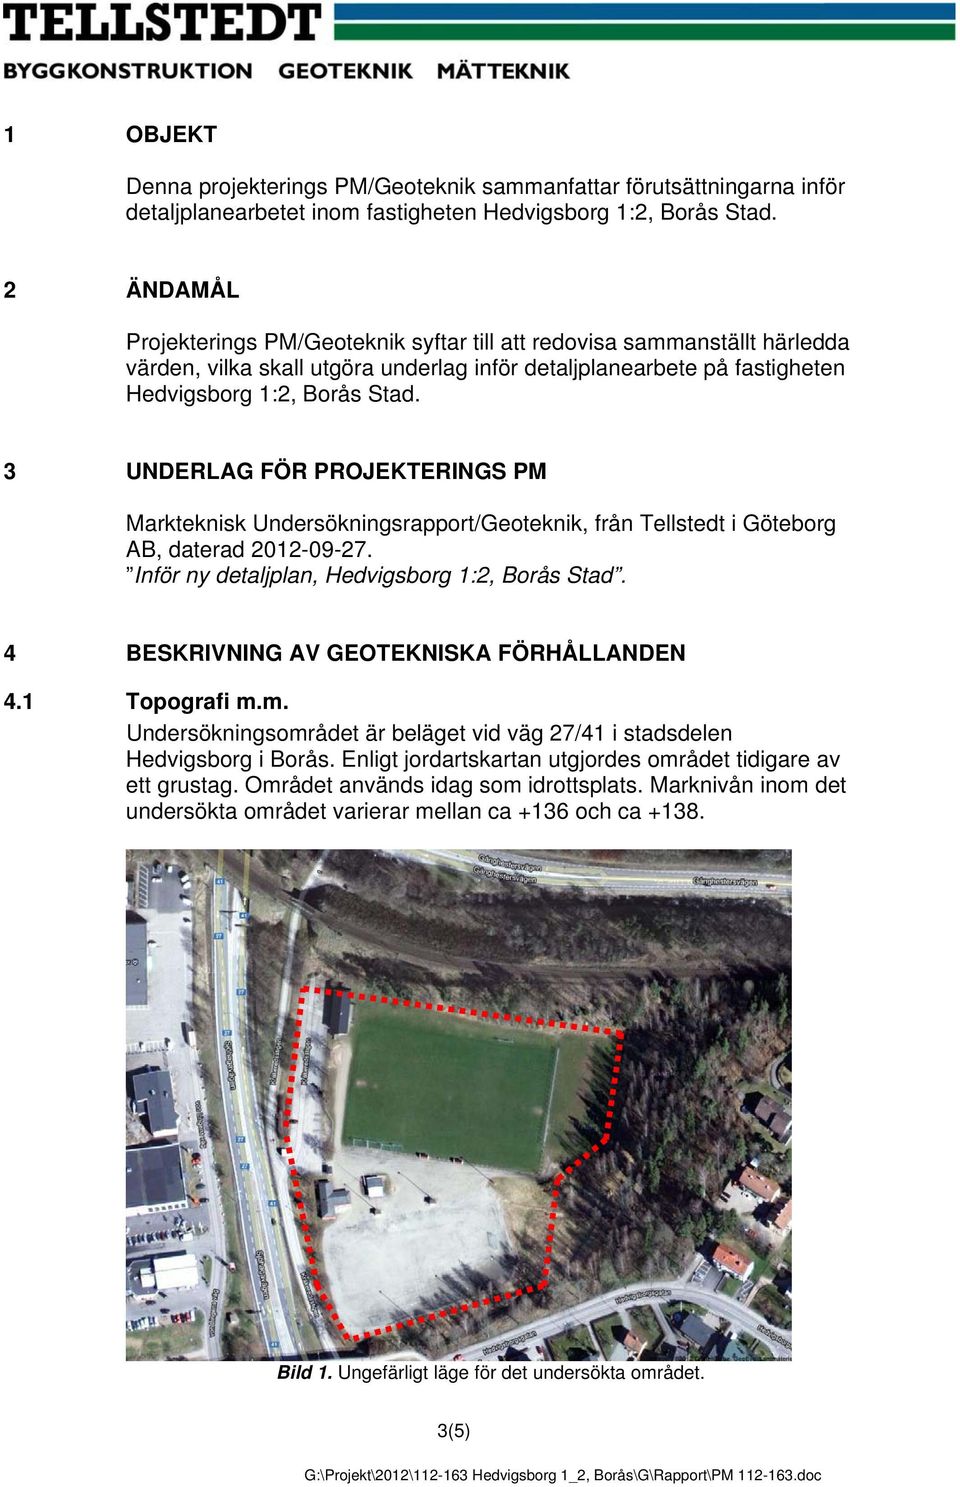 3 UNDERLAG FÖR PROJEKTERINGS PM Markteknisk Undersökningsrapport/Geoteknik, från Tellstedt i Göteborg AB, daterad 2012-09-27. Inför ny detaljplan, Hedvigsborg 1:2, Borås Stad.